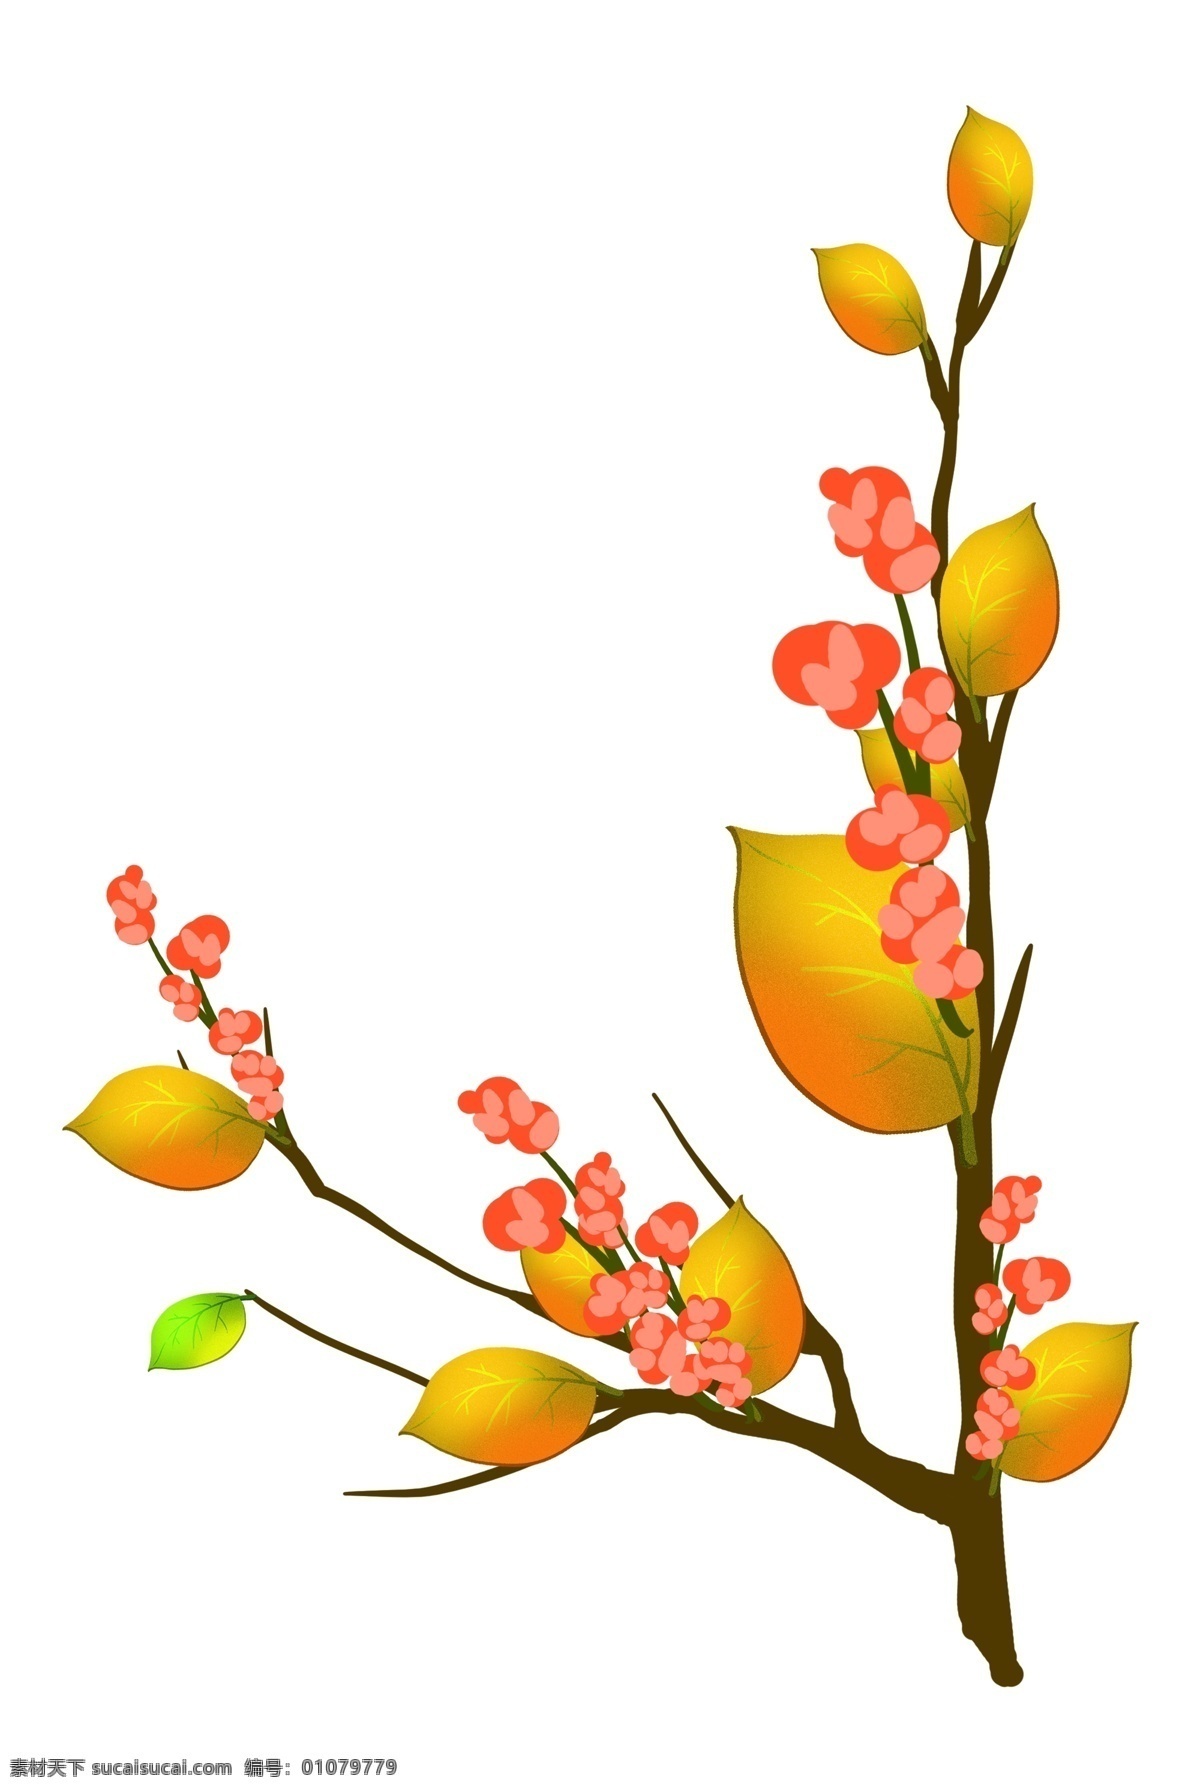 漂亮 春天 花枝 插画 花儿 鲜花 盛开的花枝 红色小花 黄色叶子 植物 漂亮的花枝 春天花枝插画